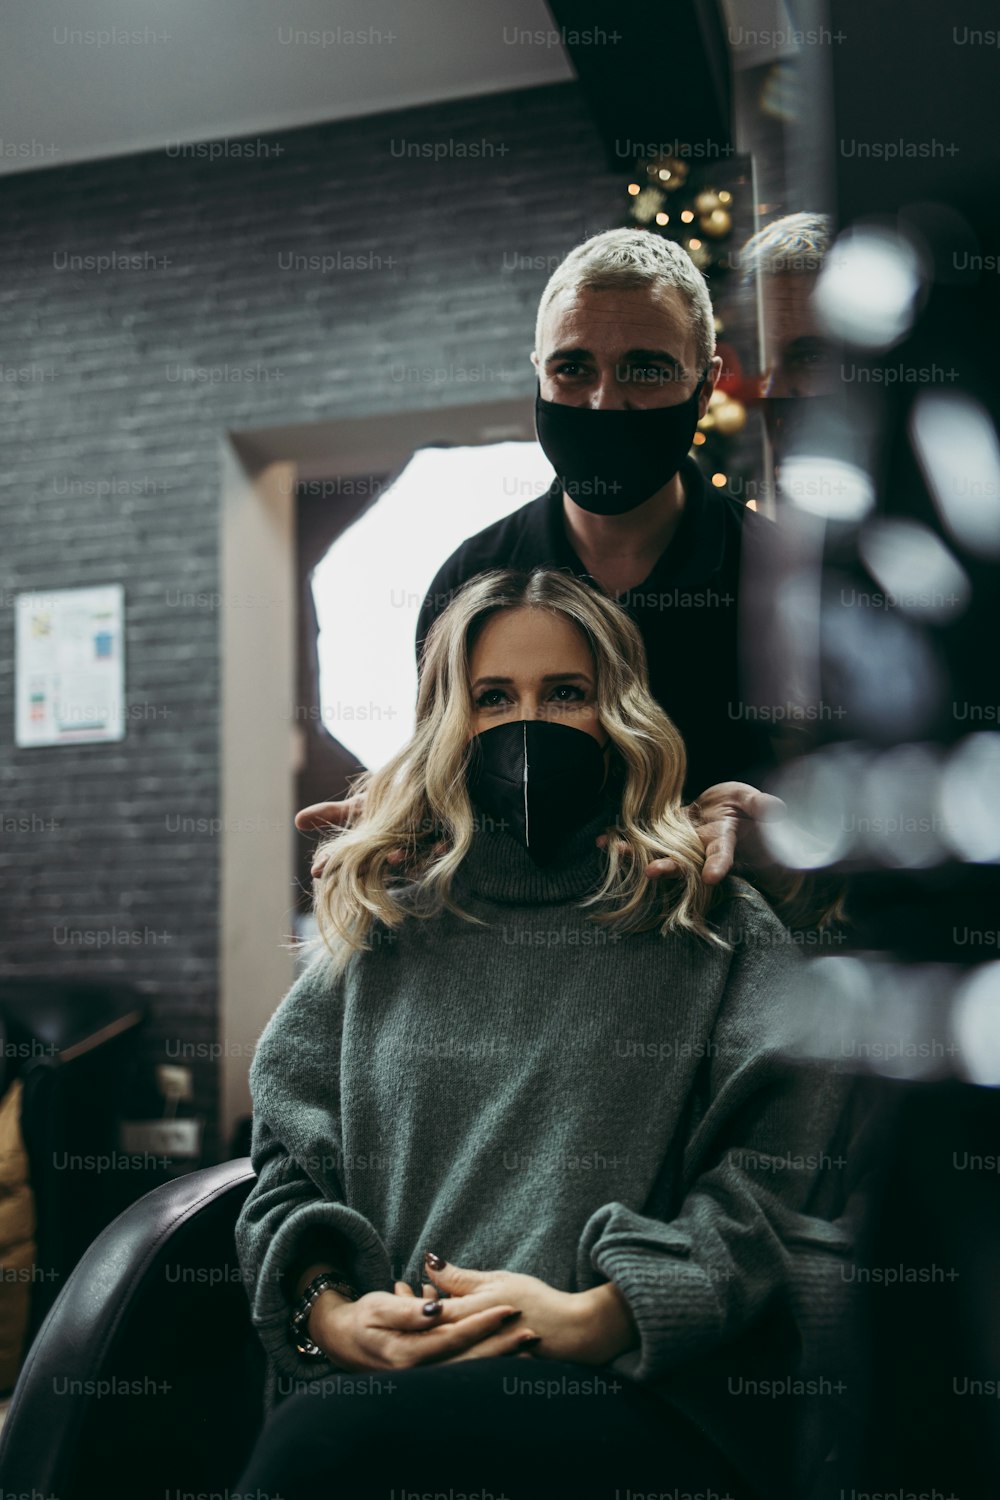 ヘアサロンで髪を染め、ハイライトを作った後の女性の美しい髪型。彼女はウイルスのパンデミックから身を守るために保護フェイスマスクを着用しています。